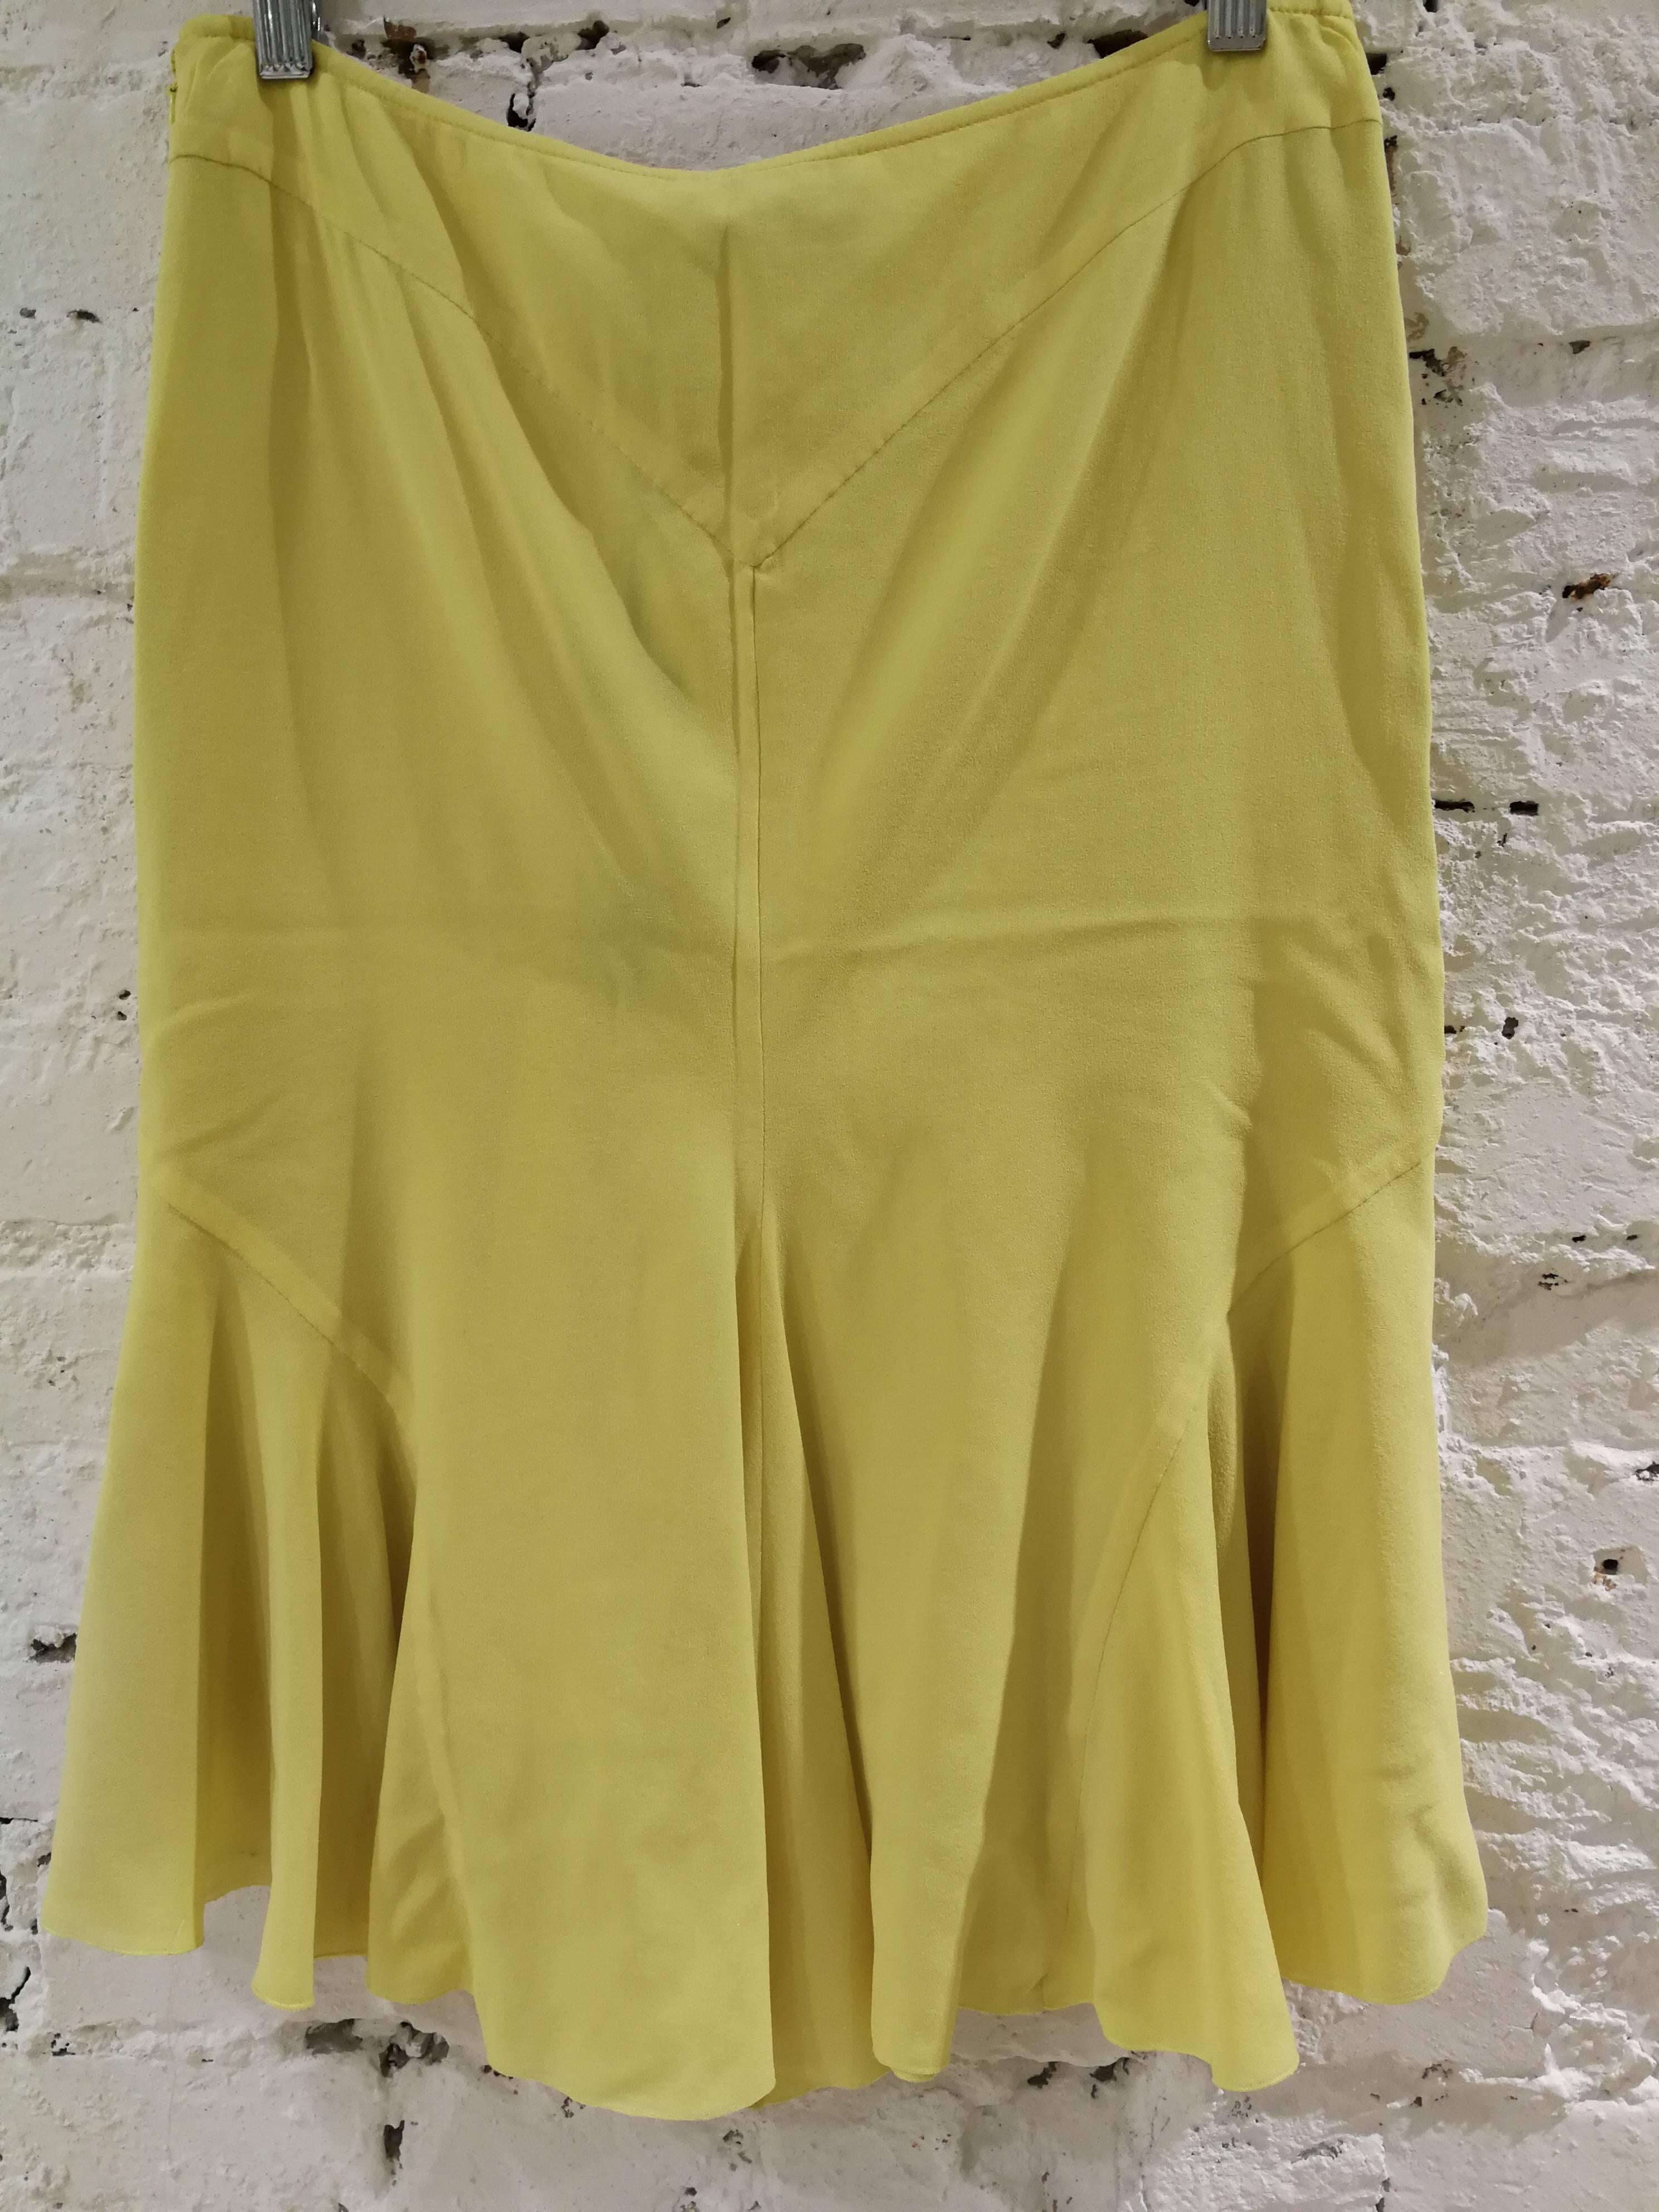 Gianni Versace Yellow Silk Skirt NWOT 3